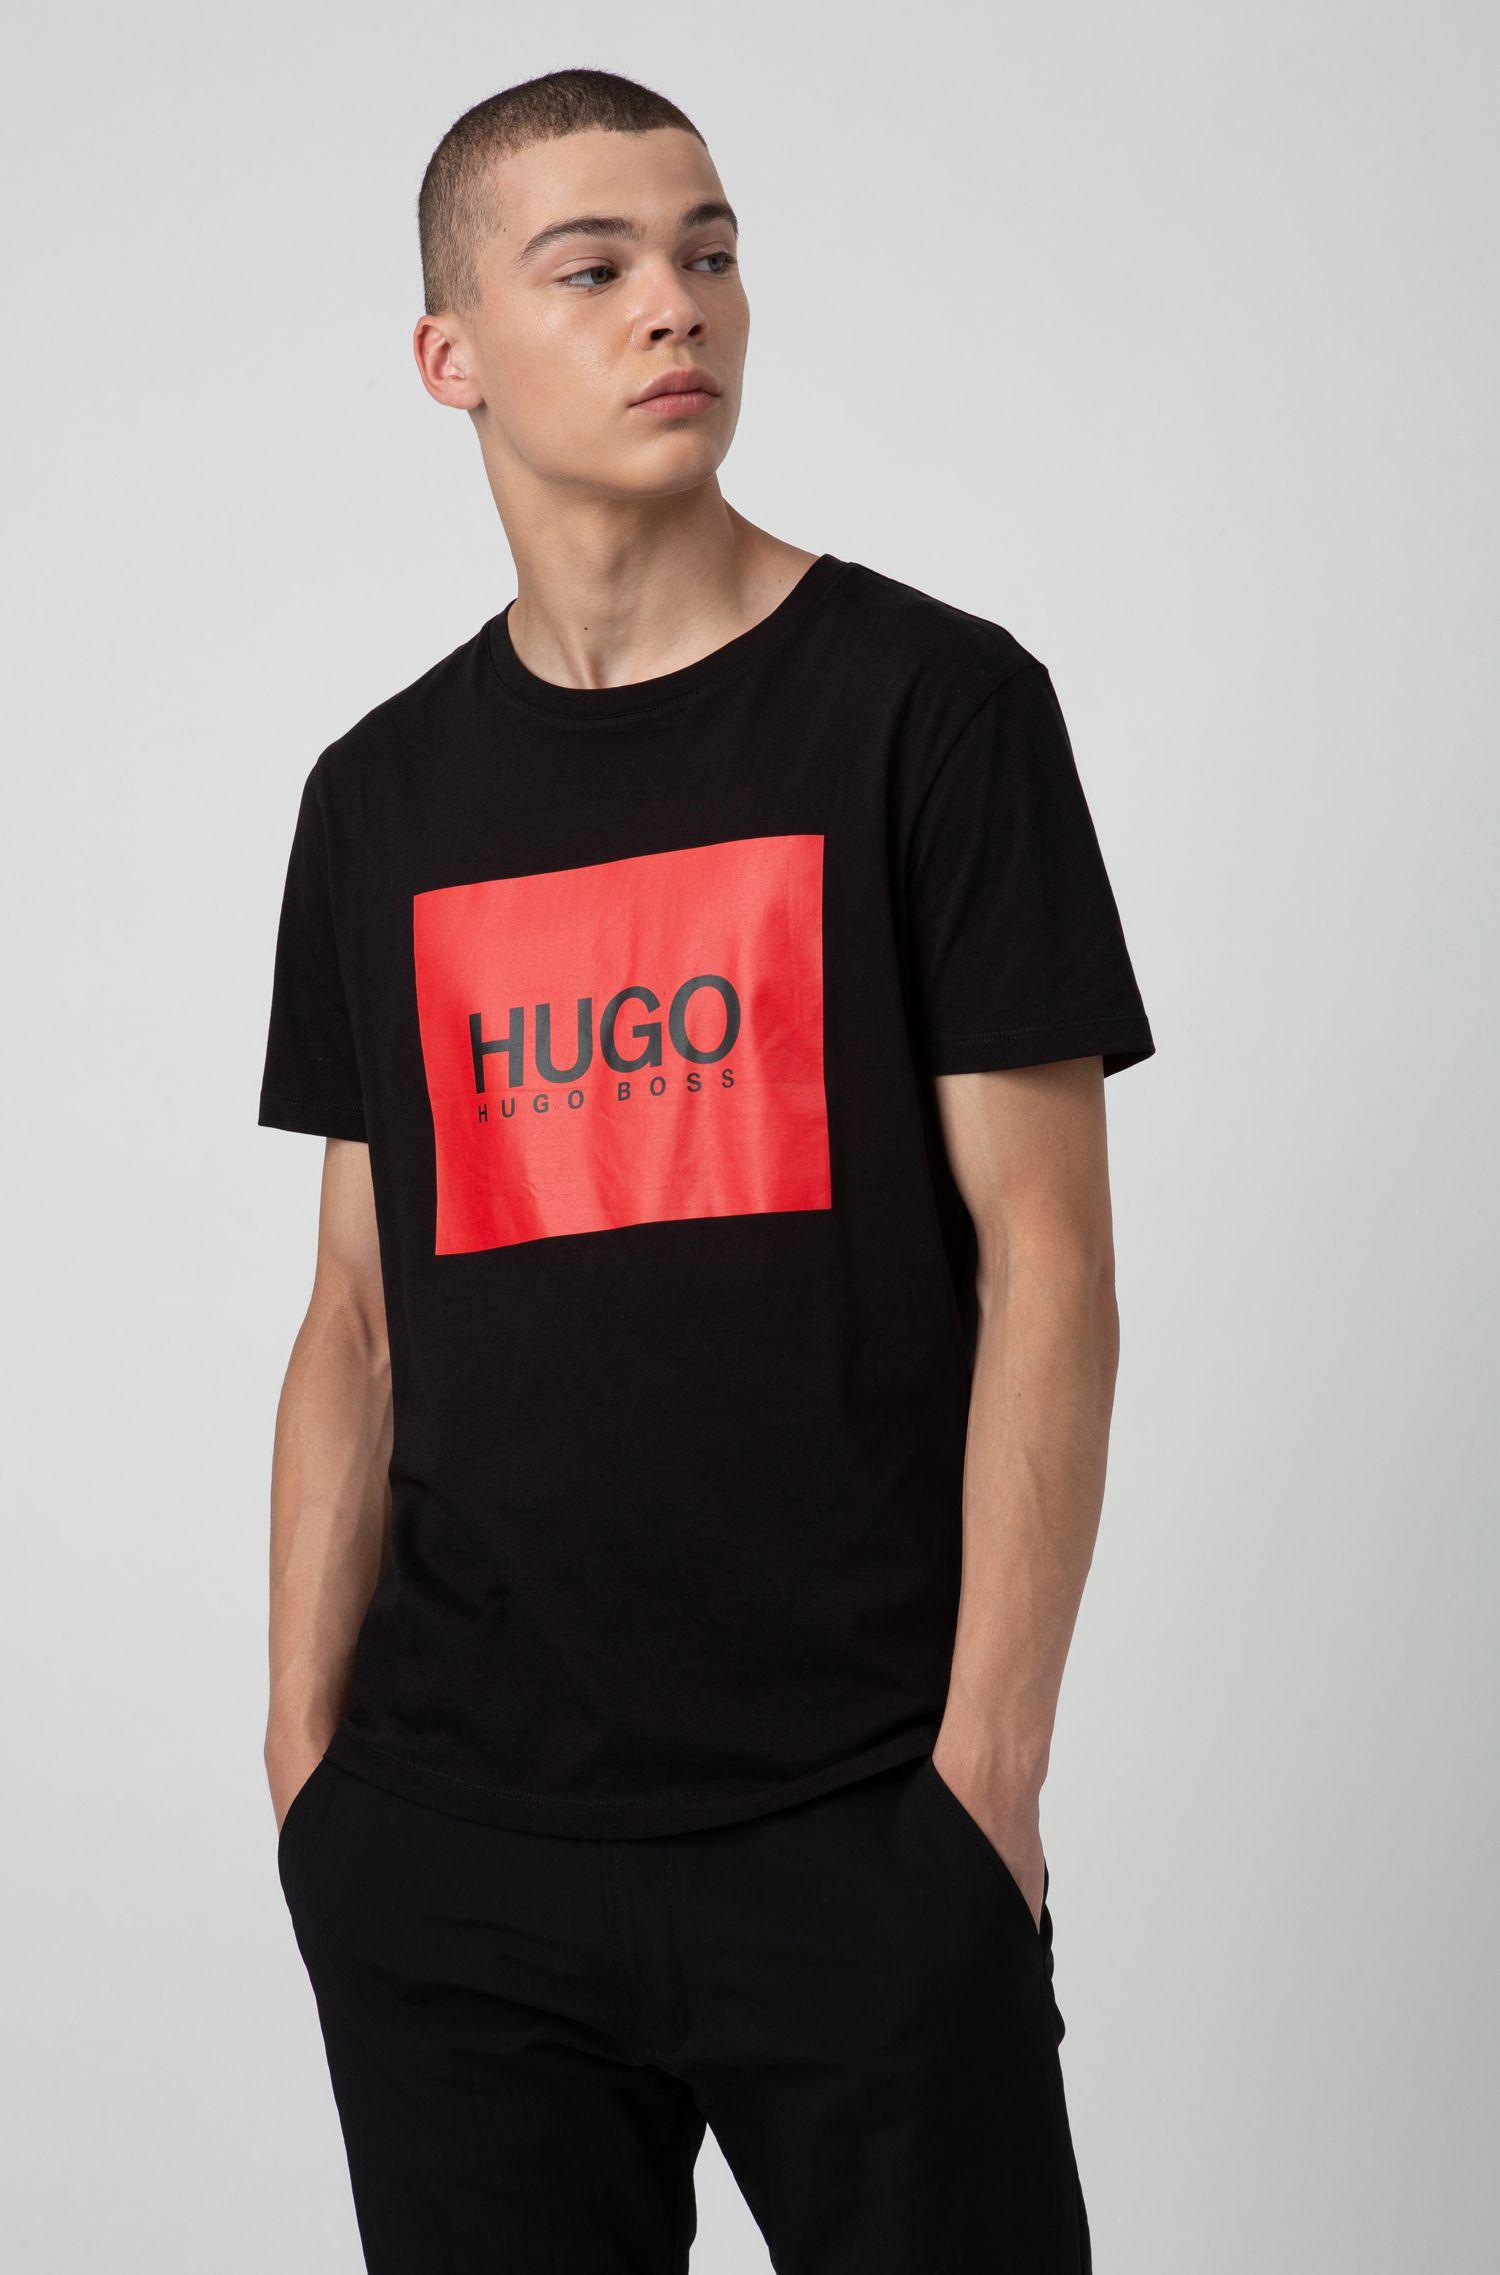 HUGO Cotton Dolive 194 T Shirt in Black for Men - Lyst